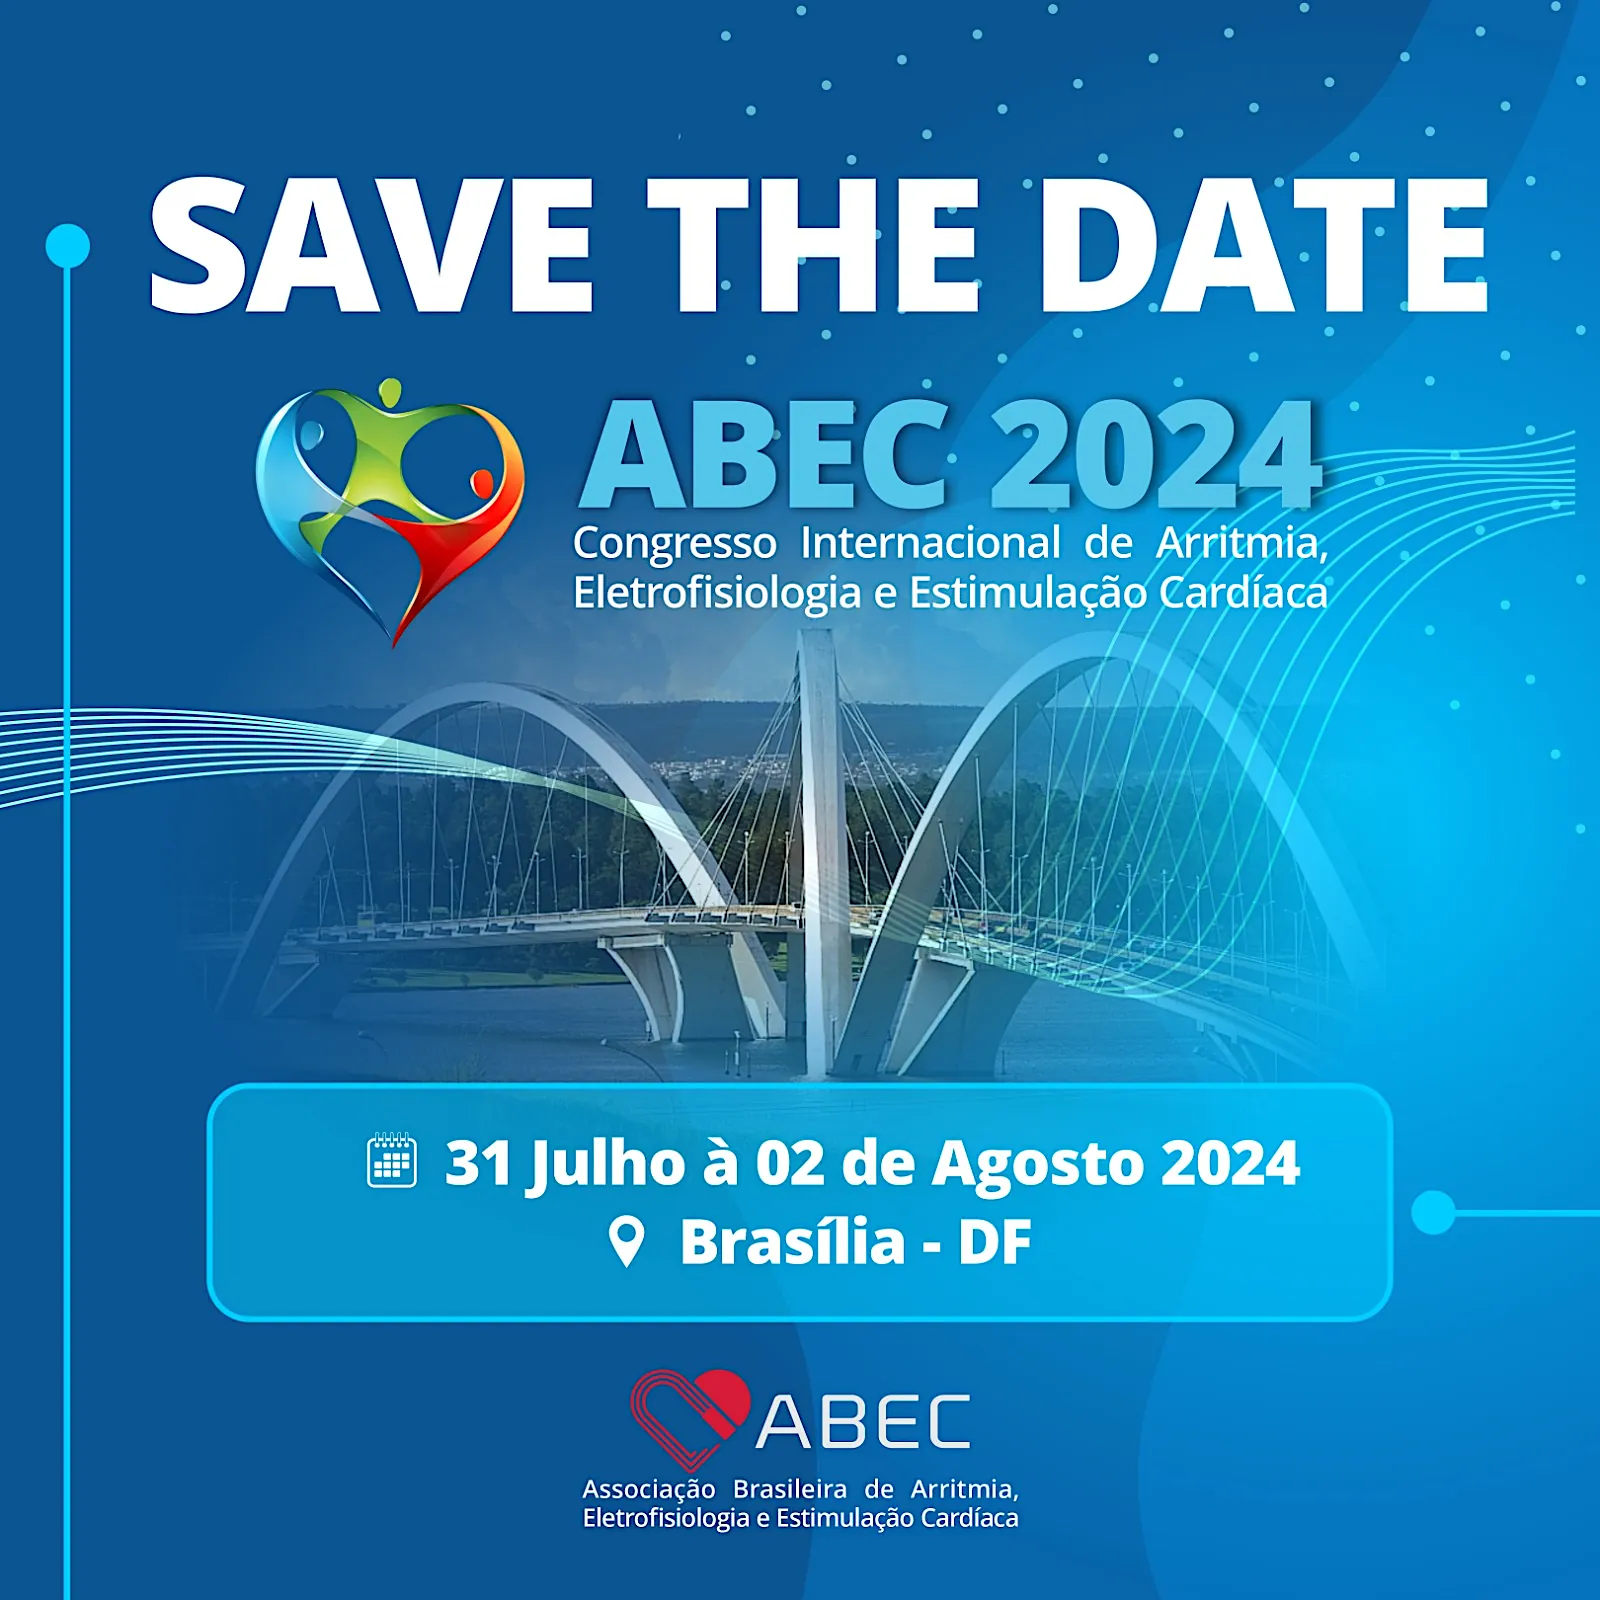 SAVE THE DATE - ABEC 2024 Congresso Internacional de Arritmia, Eletrofisiologia e Estimulação Cardíaca